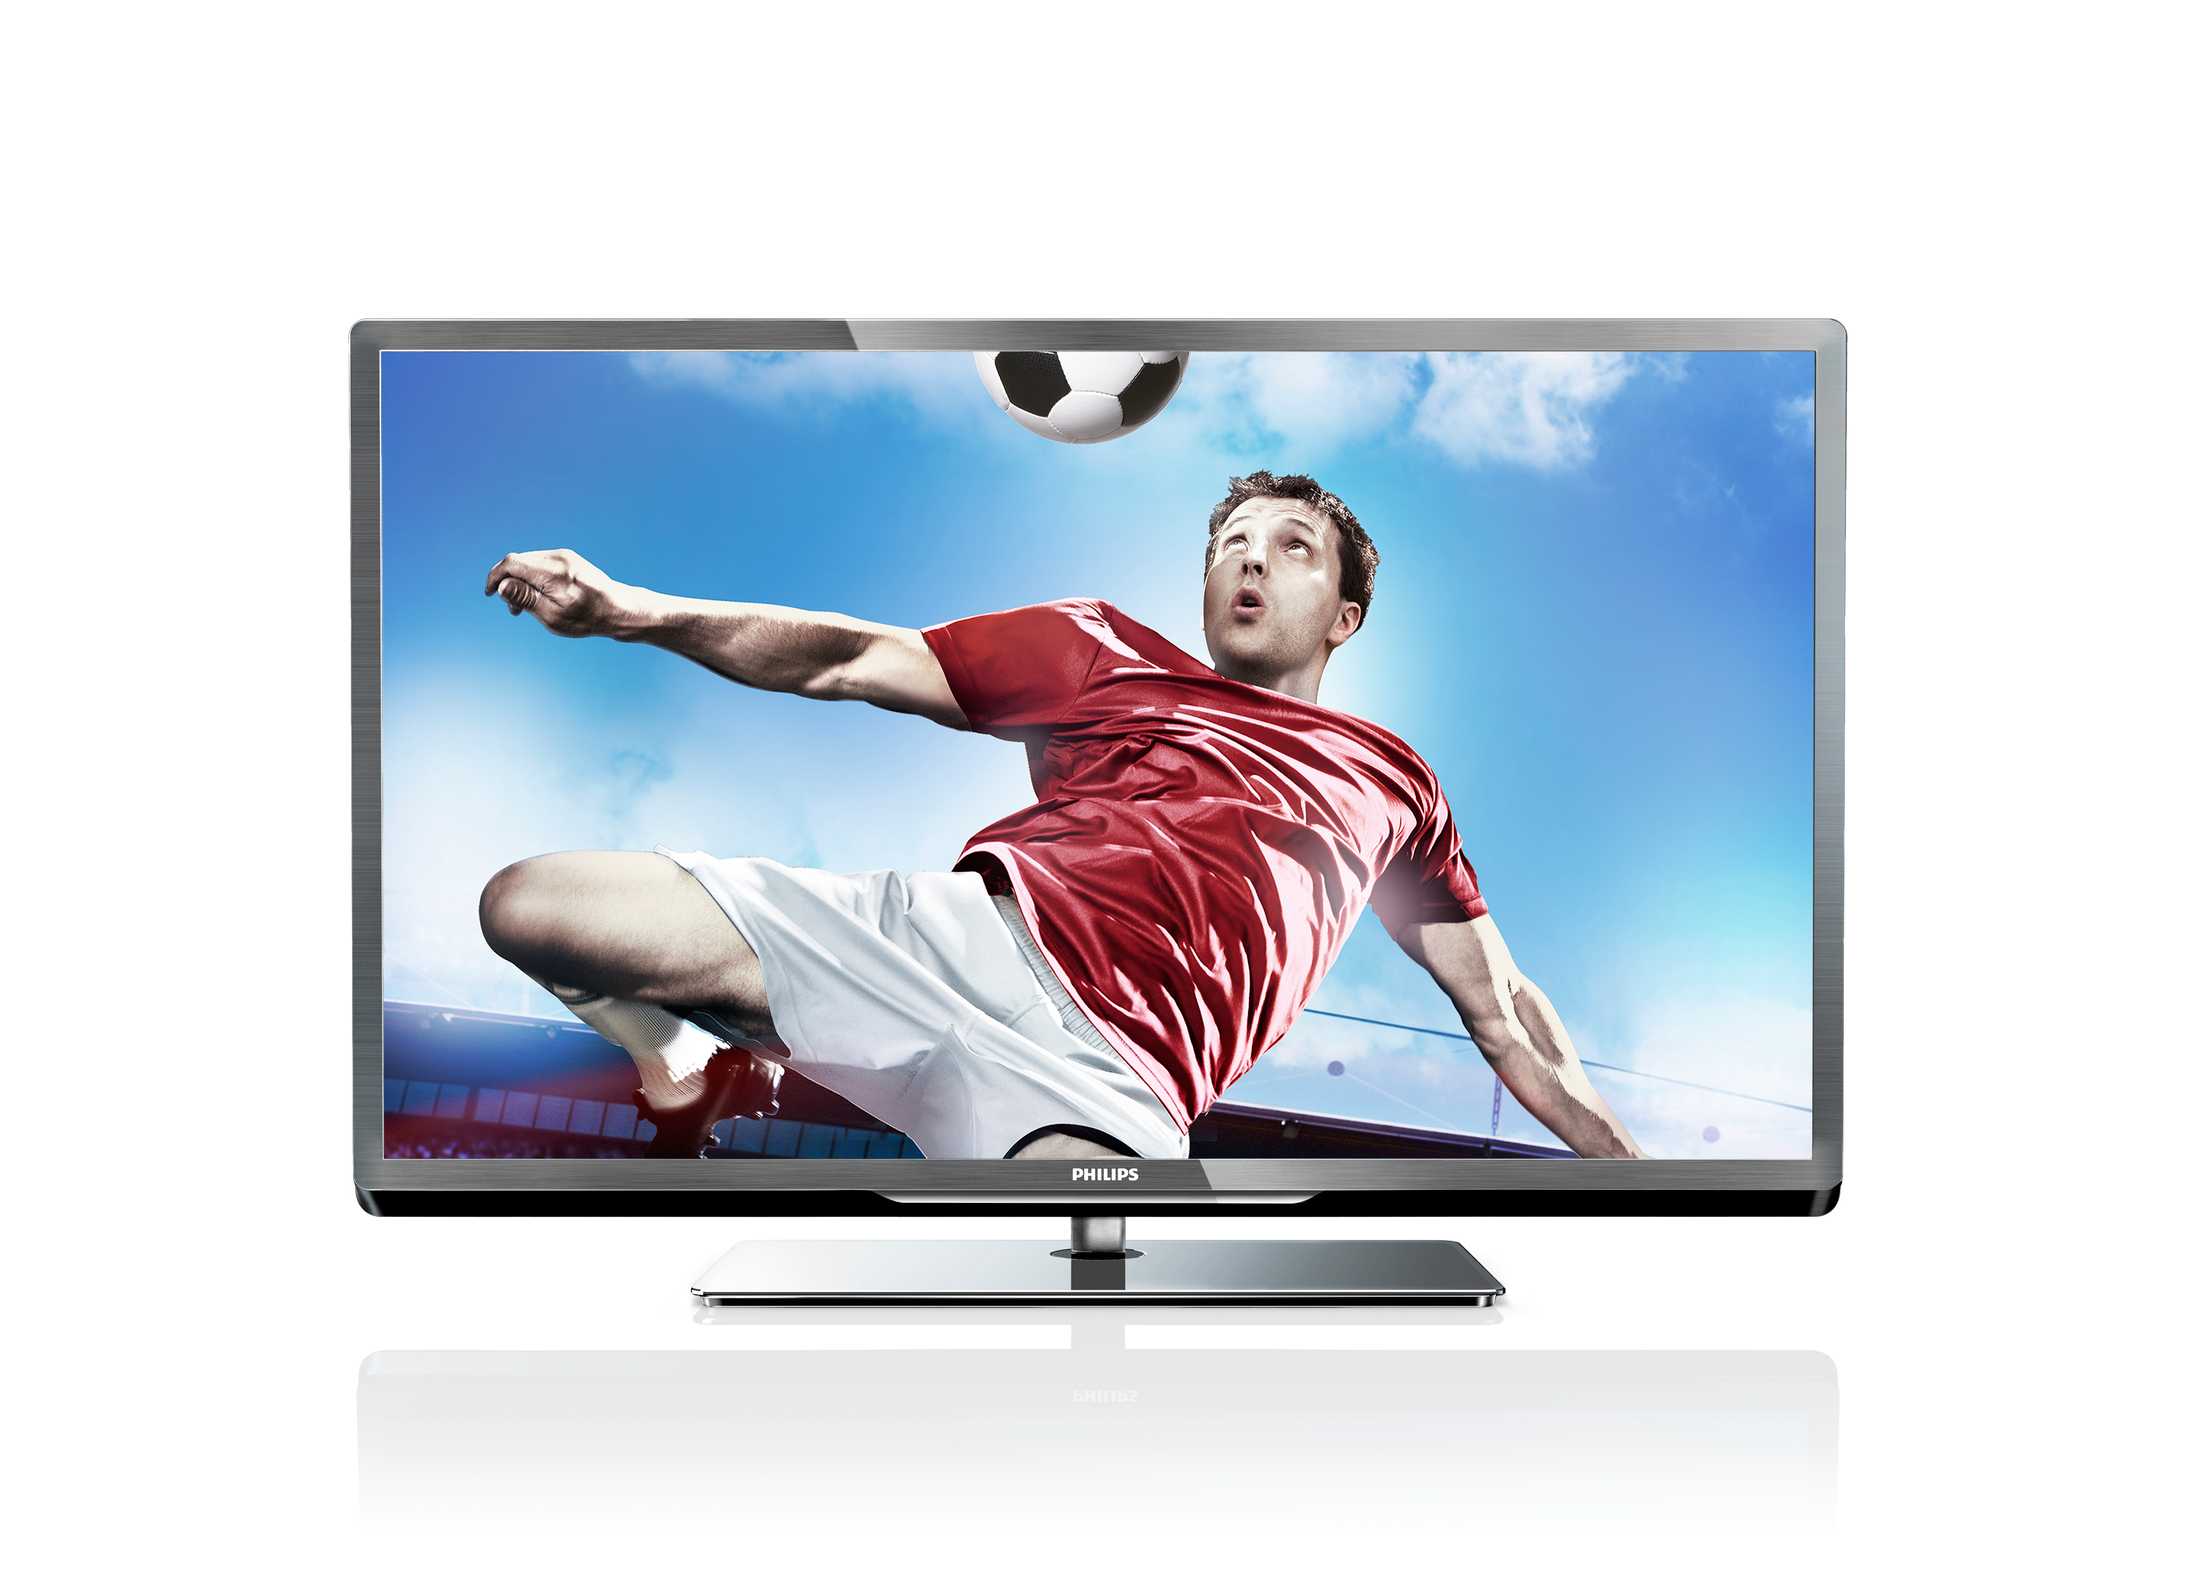 Телевизор Philips 39PFL4208H - подробные характеристики обзоры видео фото Цены в интернет-магазинах где можно купить телевизор Philips 39PFL4208H